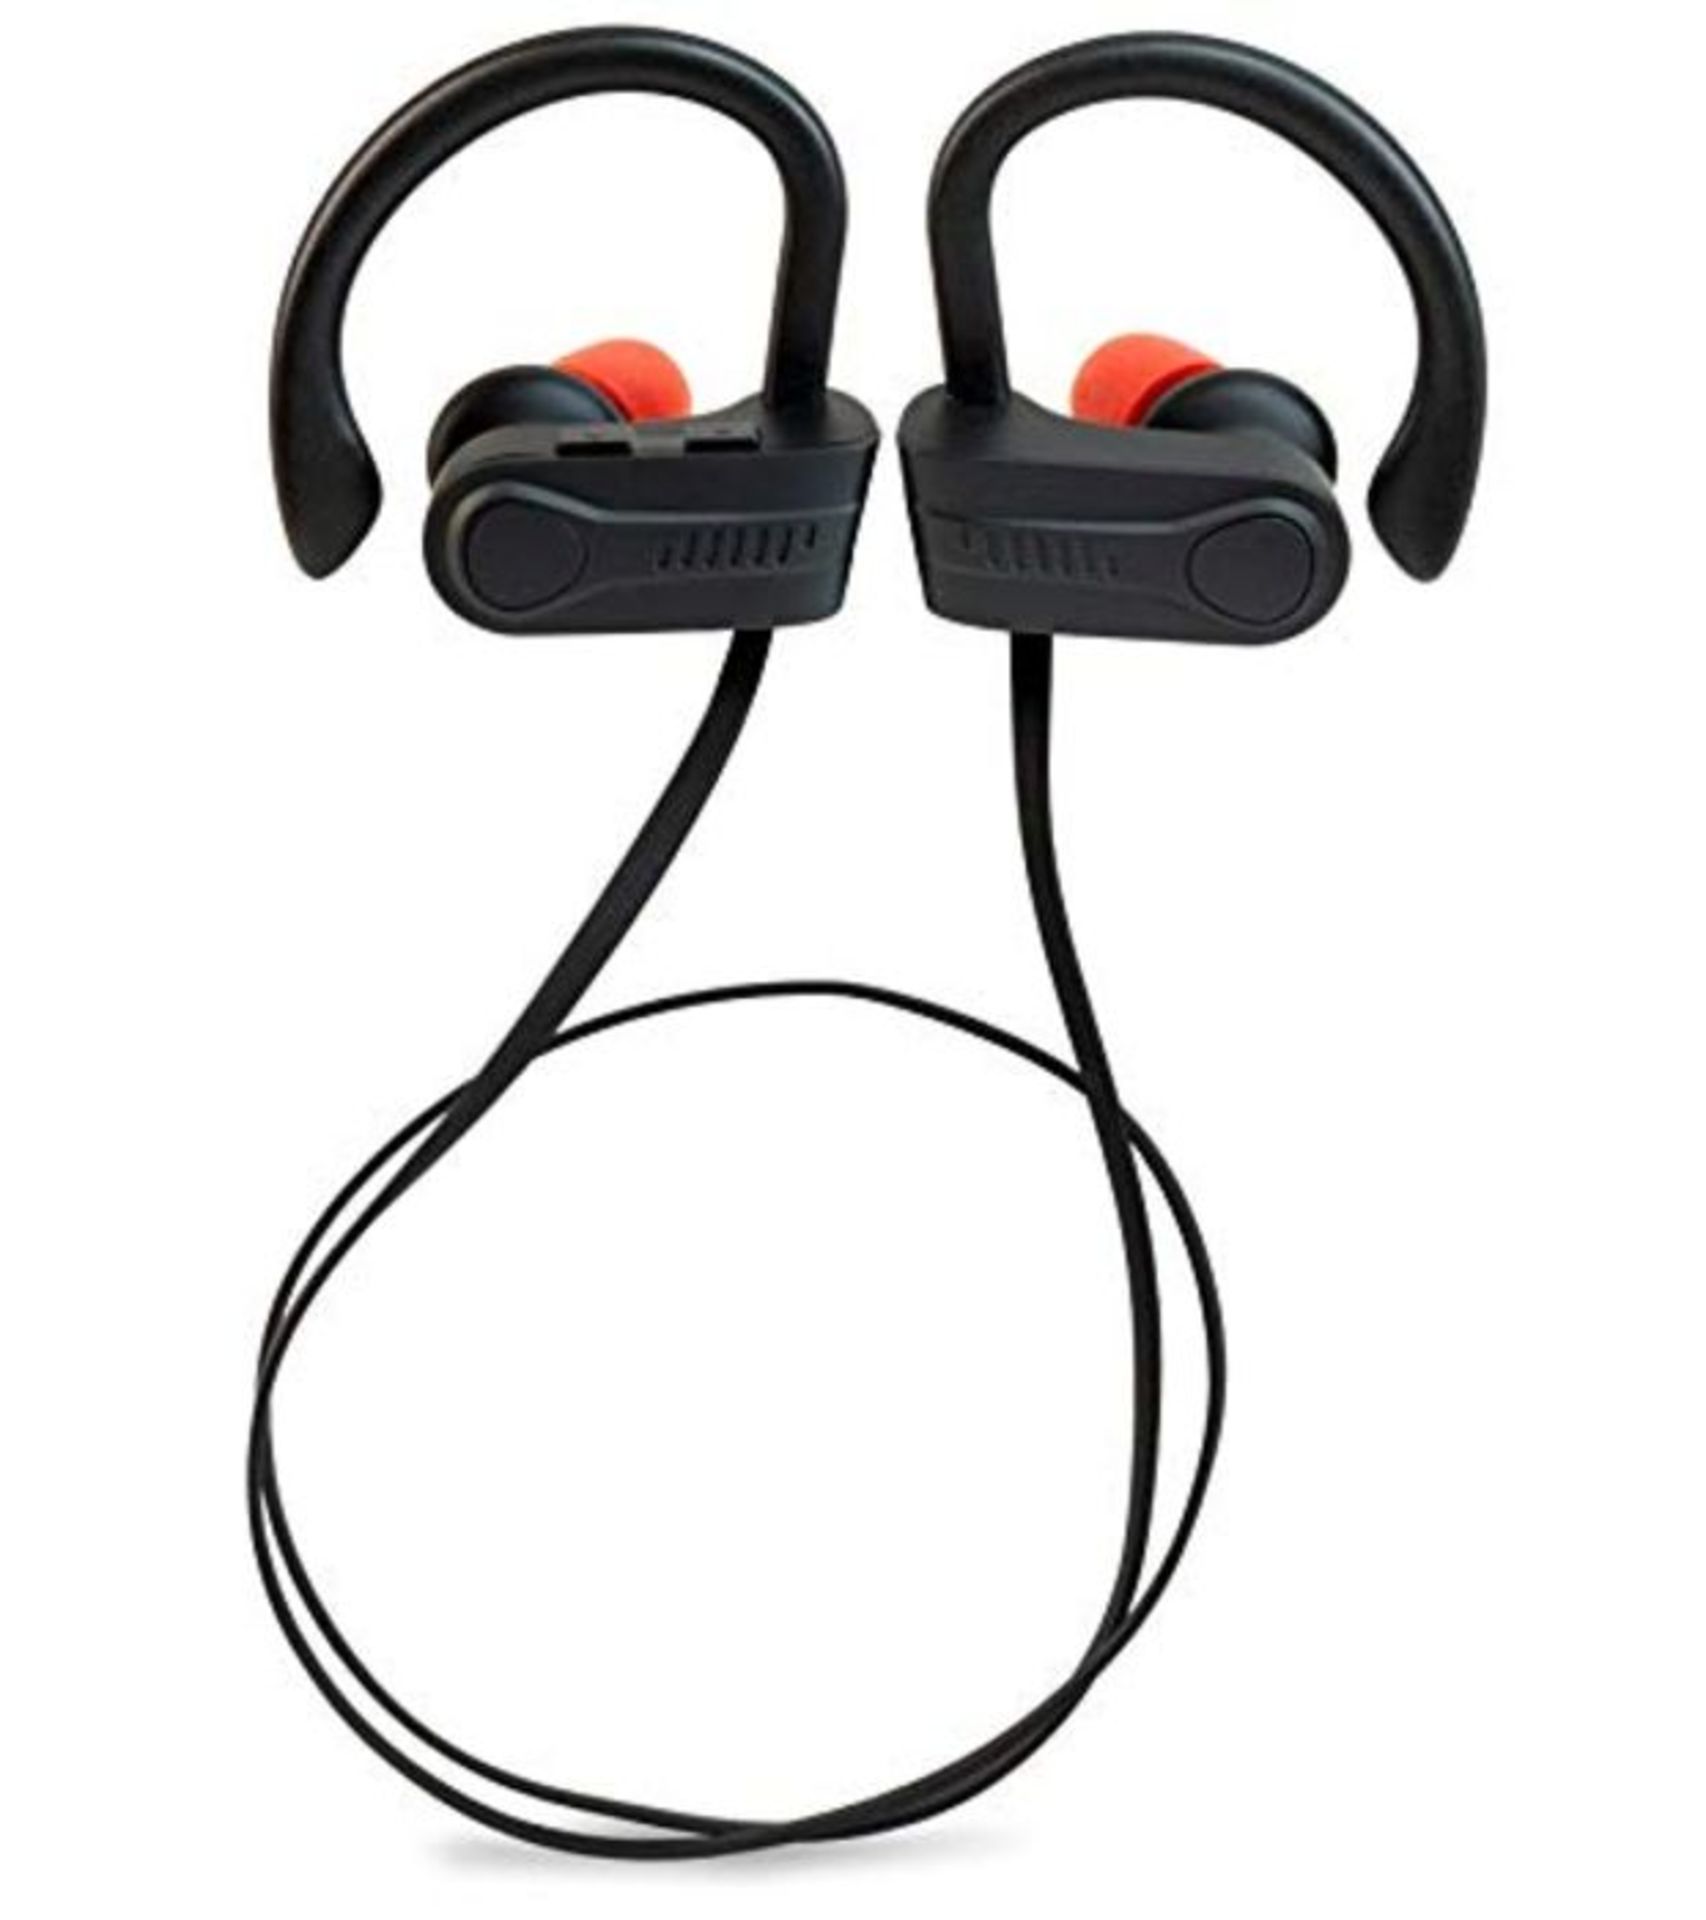 FeinTech AKH 5-00 Bluetooth 5.0 Sport Headphones Earbuds Microphone AAC IPX7 Black